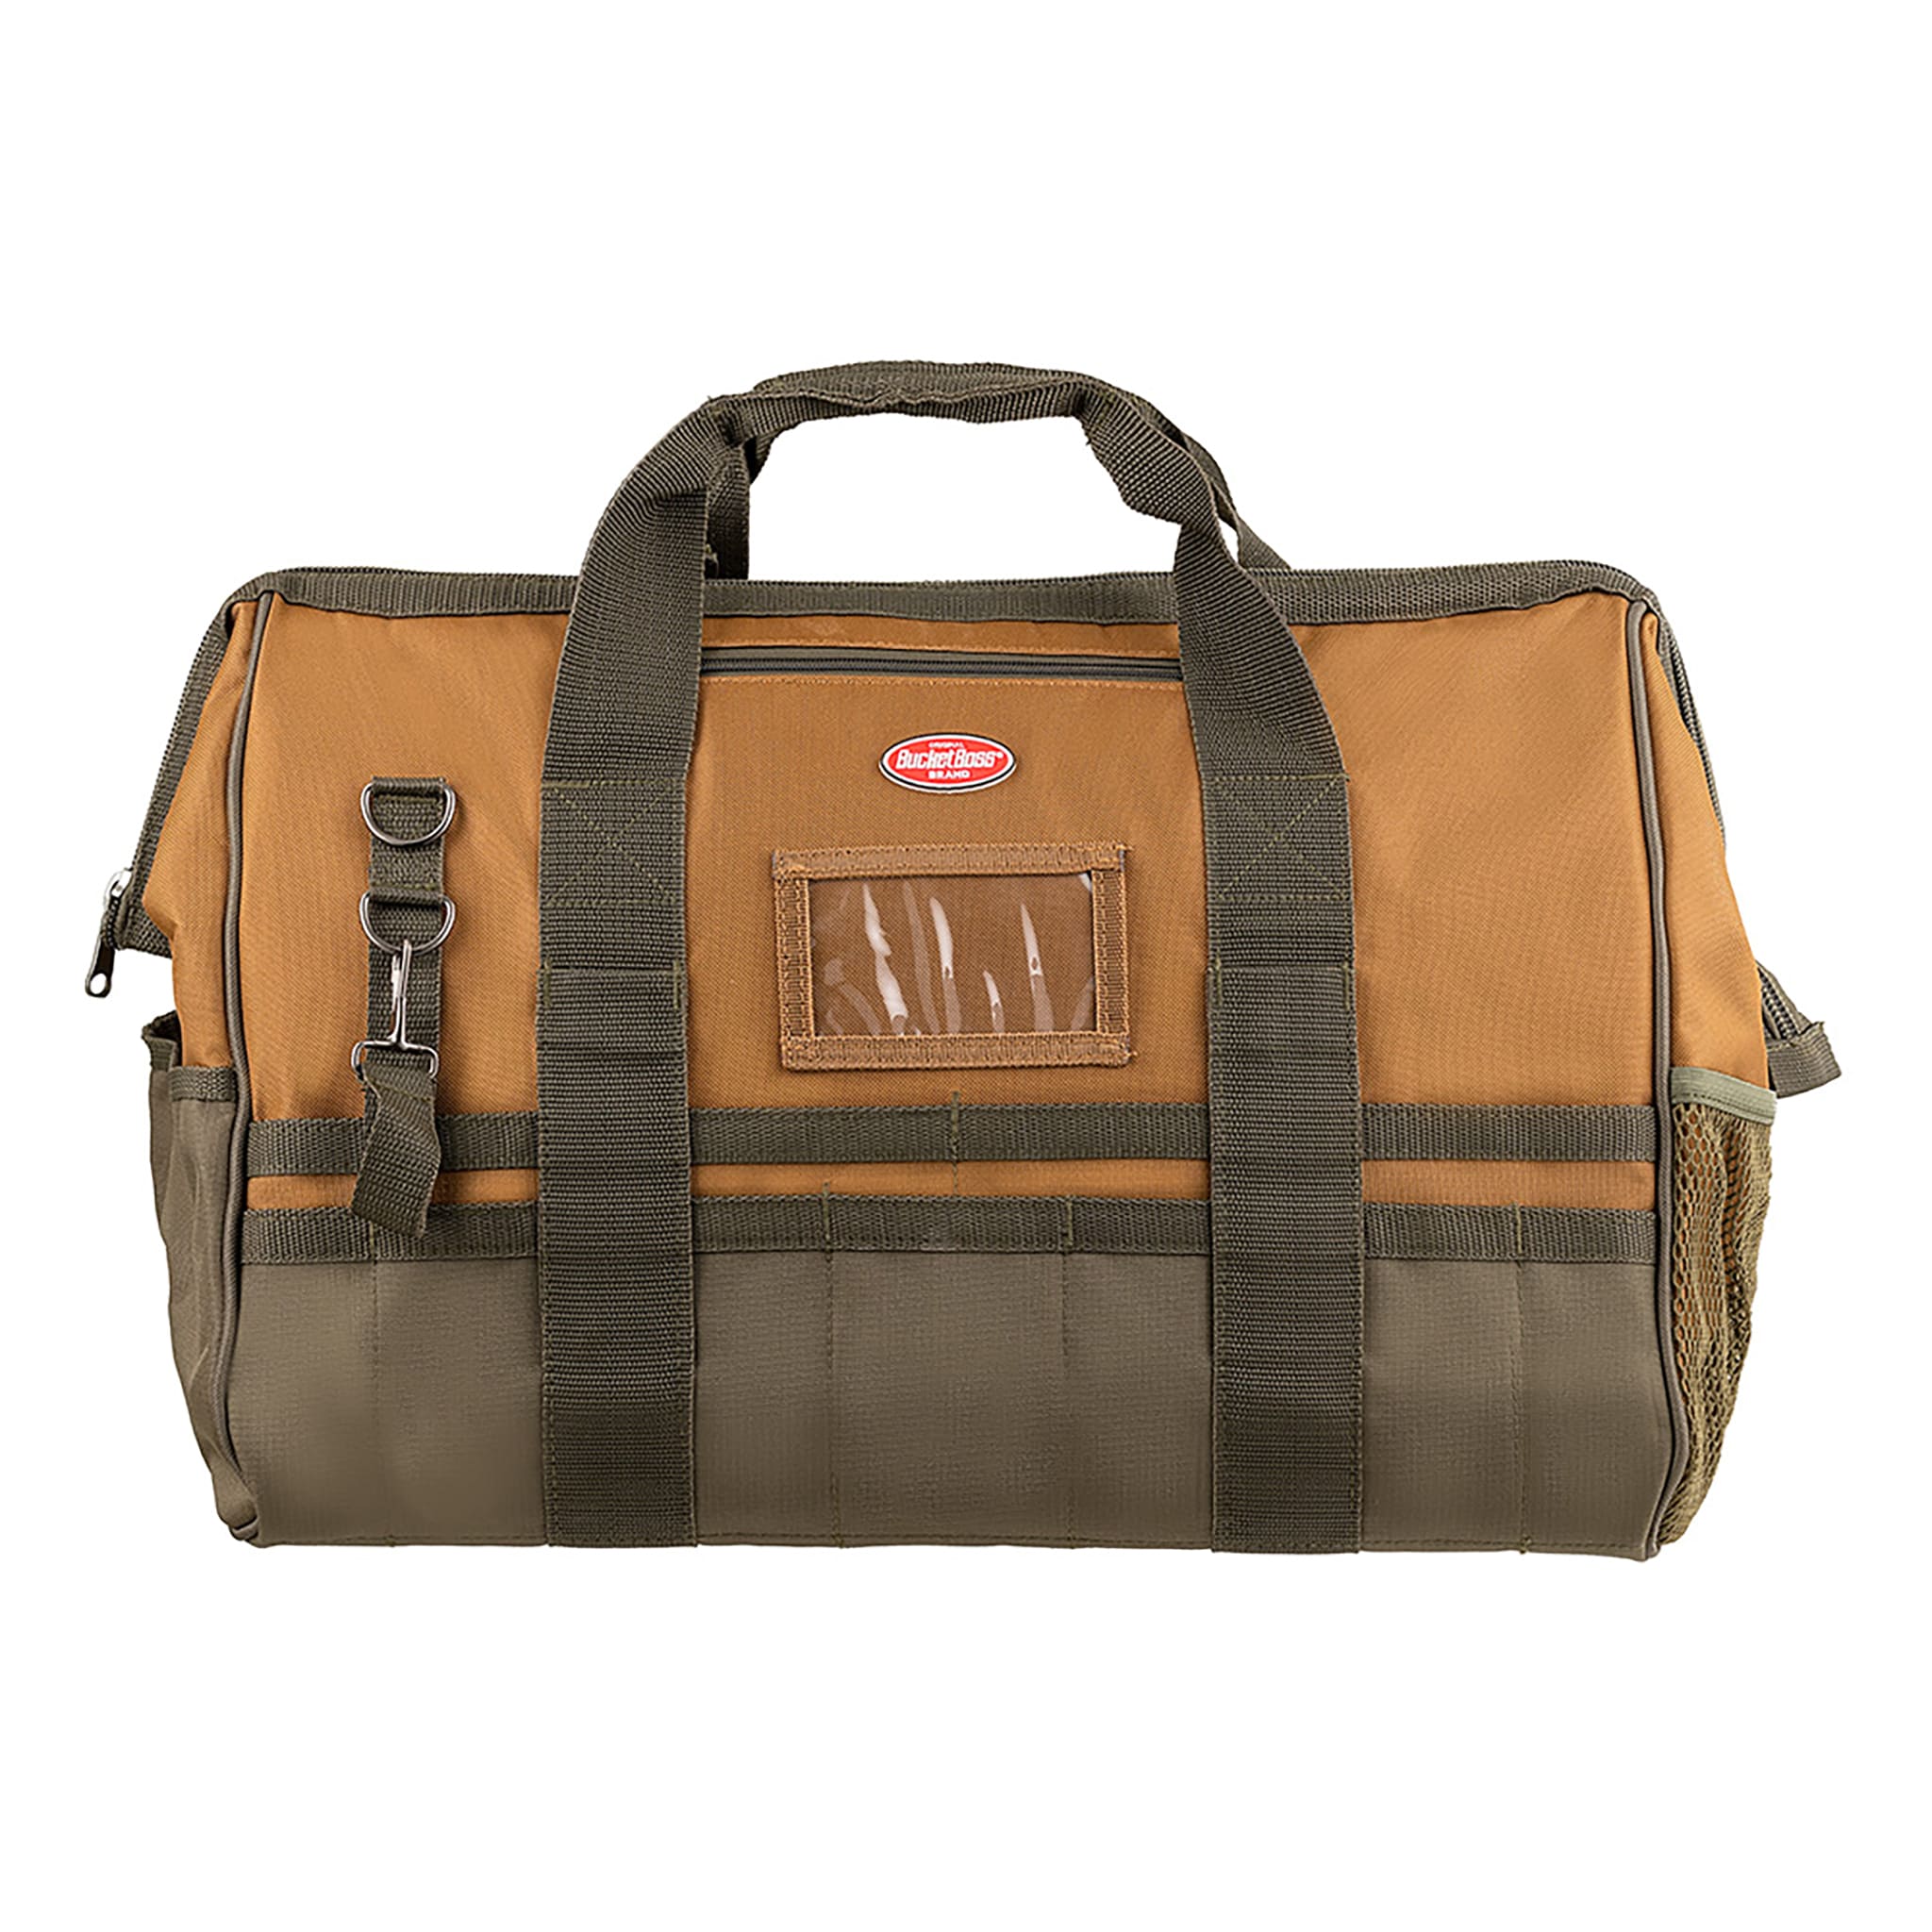 Bucket Boss - Tool Bag: 30 Pocket - 42083287 - MSC Industrial Supply